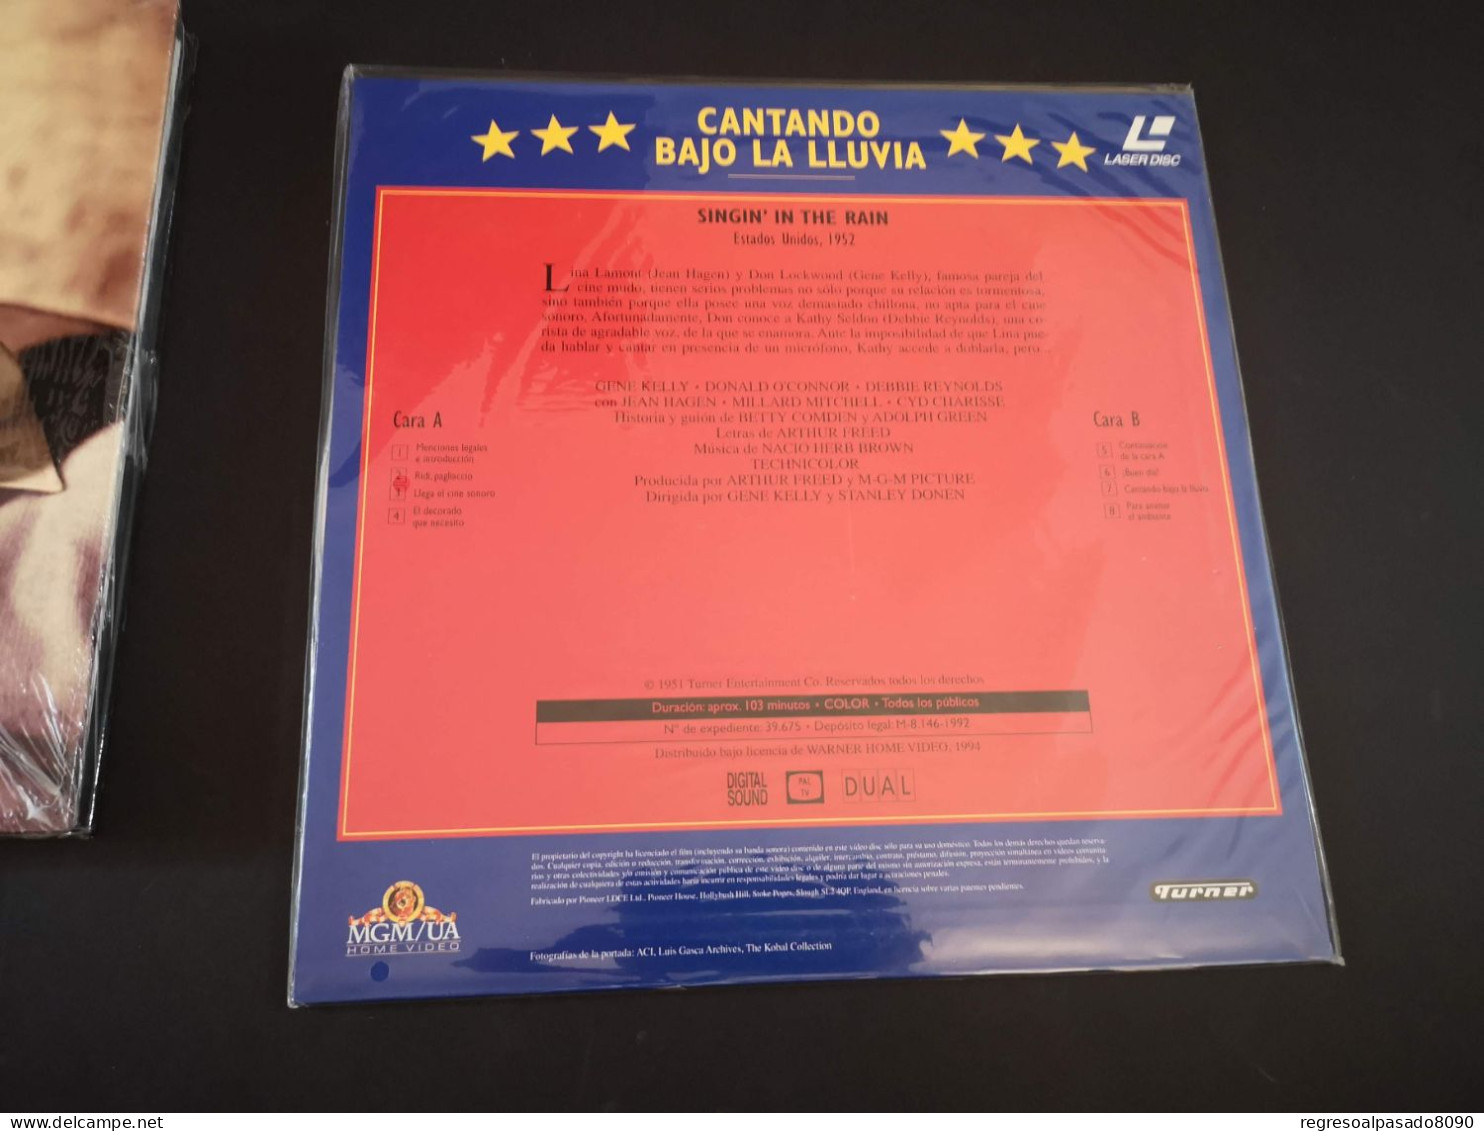 Gene Kelly Libro Y Película Laser Disc Laserdisc Cantando Bajo La Lluvia. Mitos Del Cine Planeta Años 90 - Klassiker